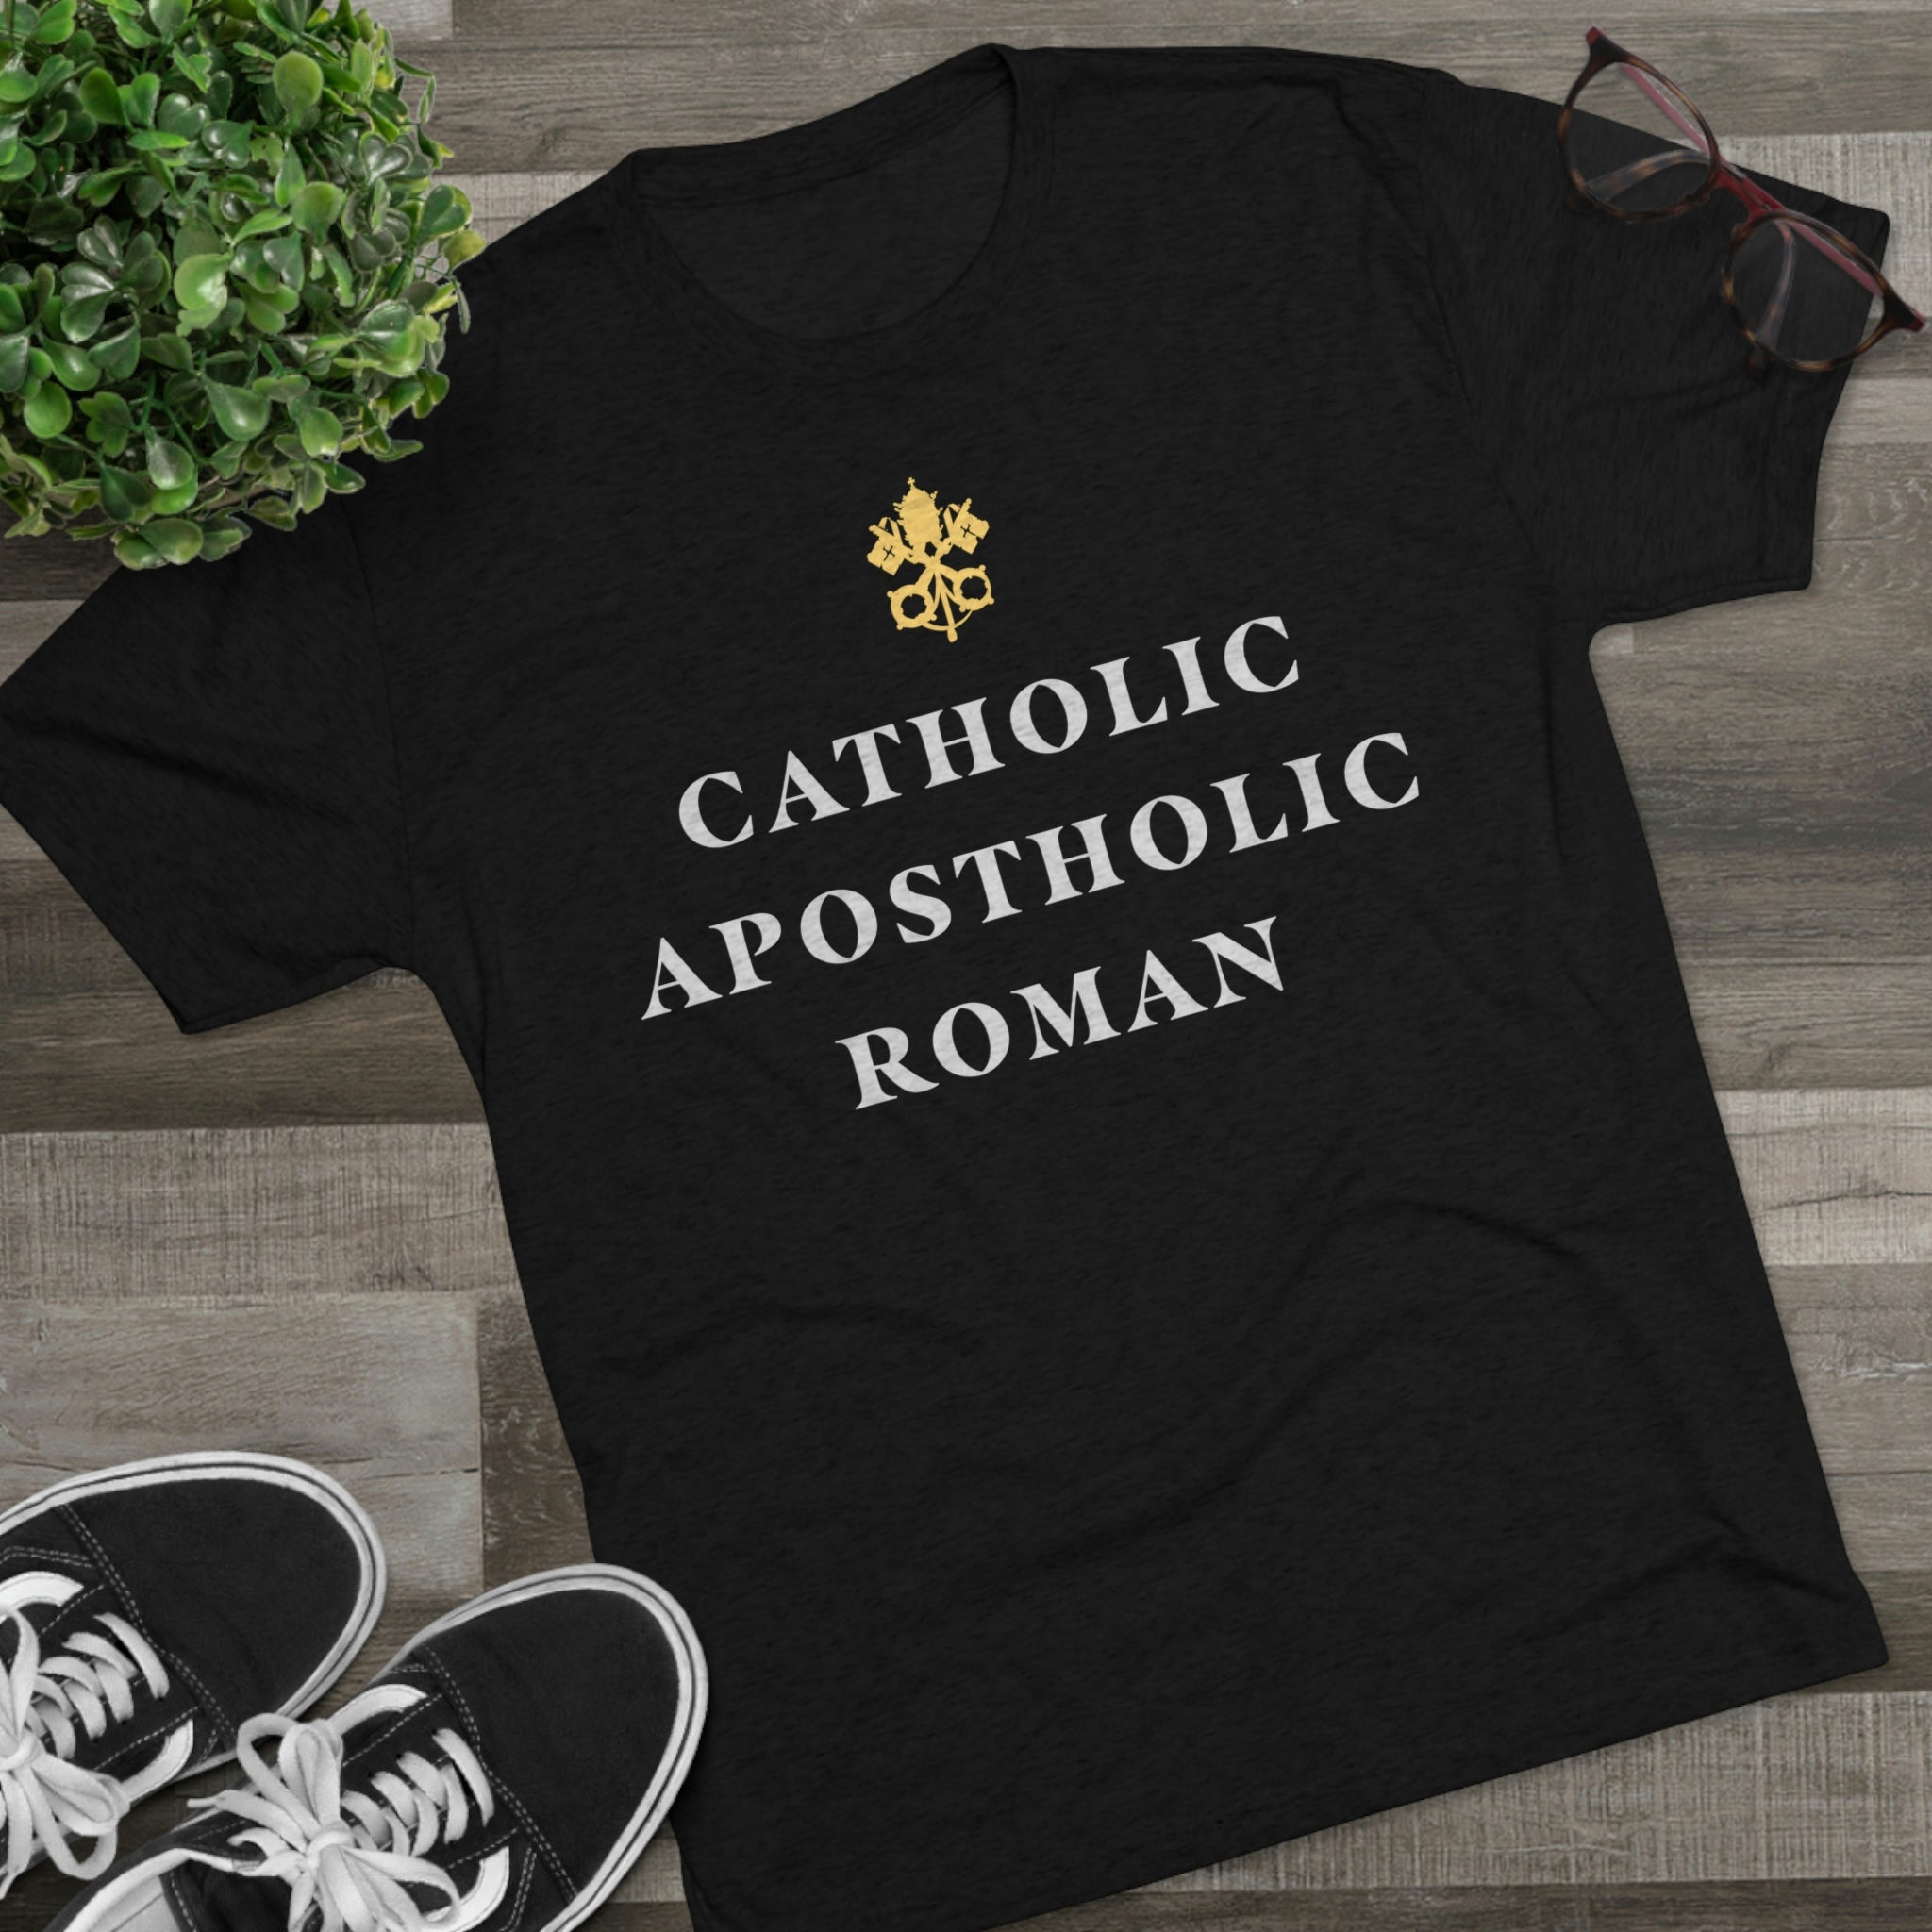 Men's Catholic Premium T-shirt